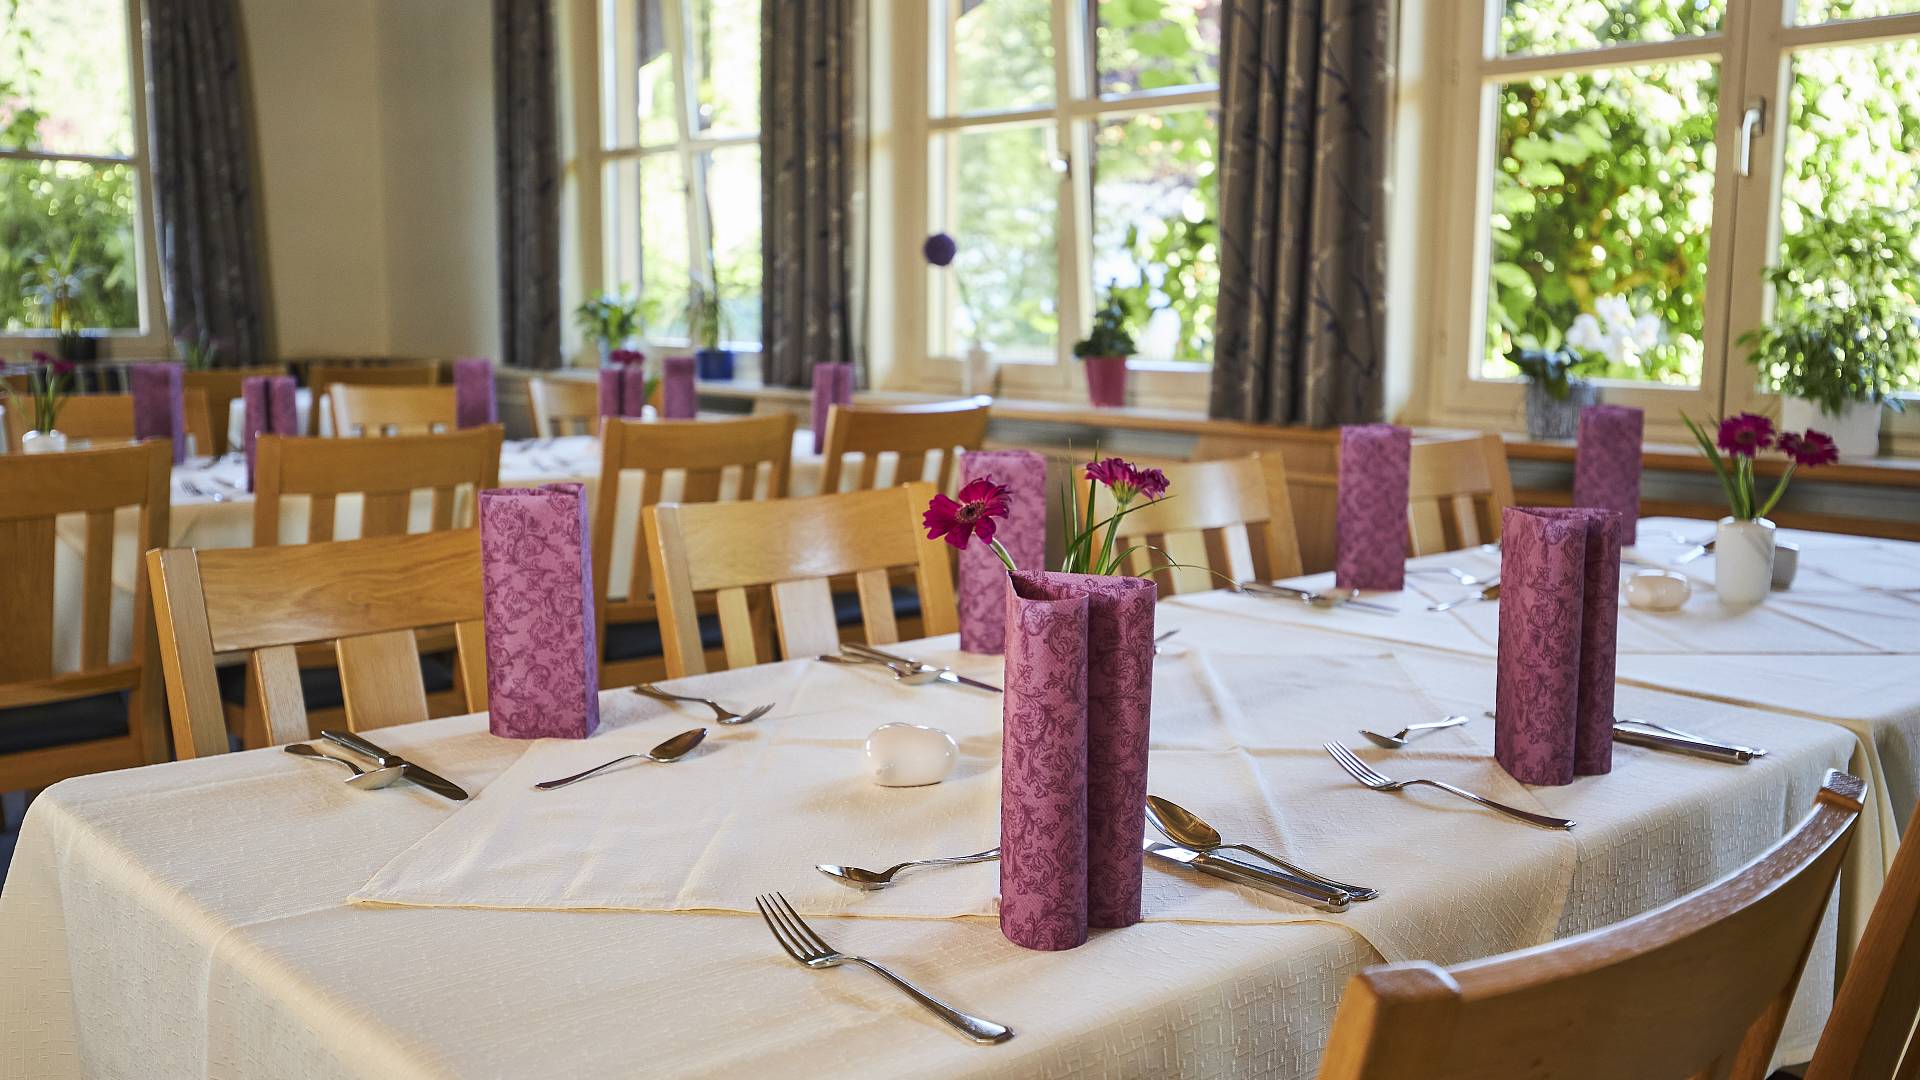 Dekorativ gedeckter Tisch mit lilafarbenen Servietten und Blumen